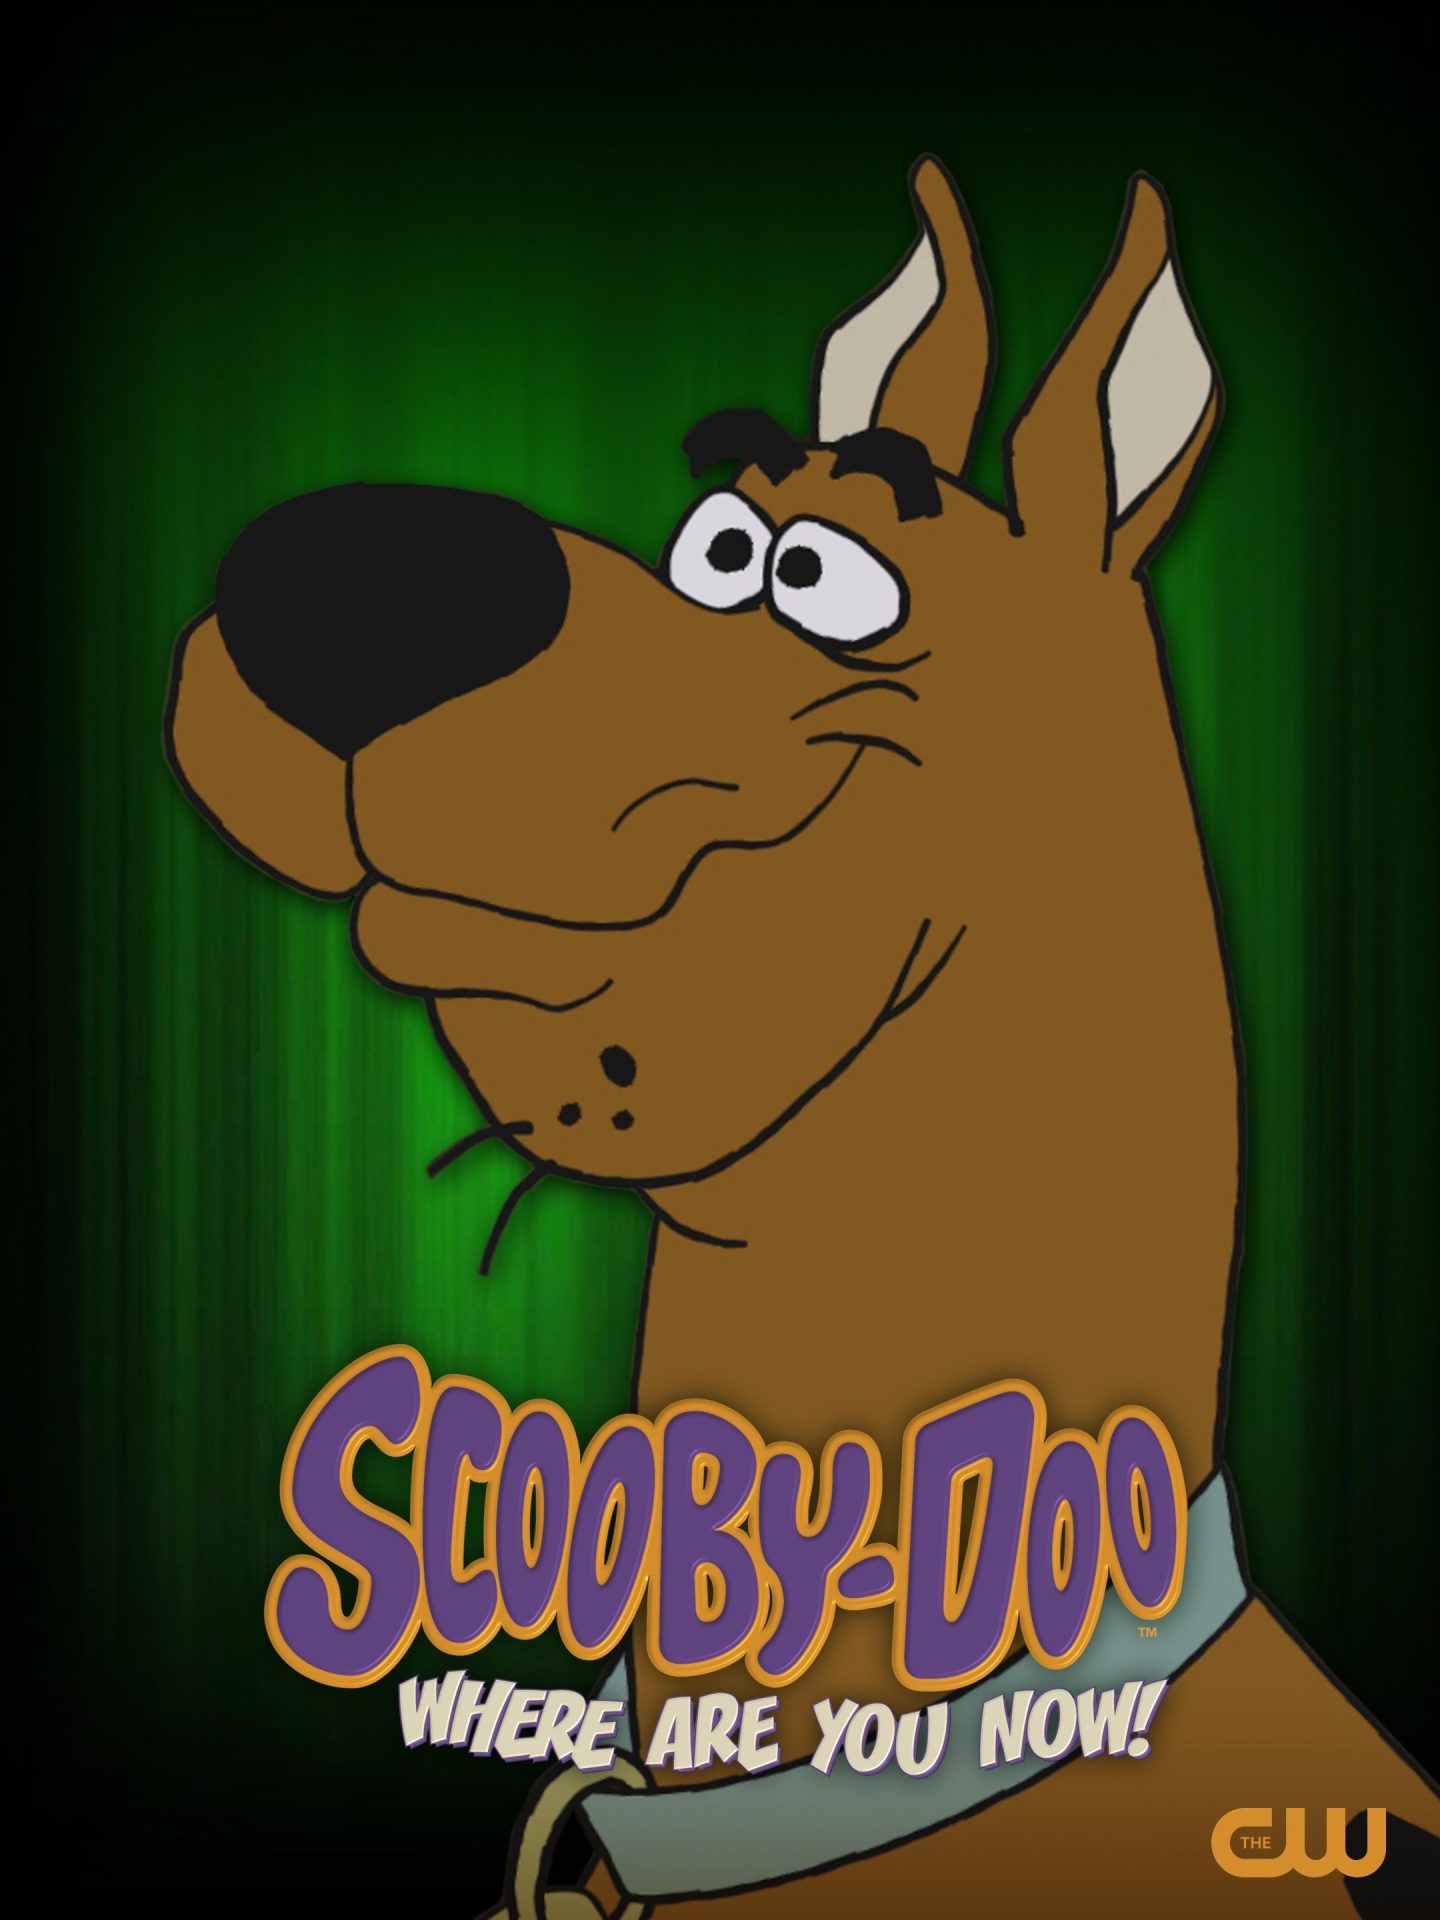 اسکوبی دو الان کجایی (Scooby-Doo, Where Are You Now!)